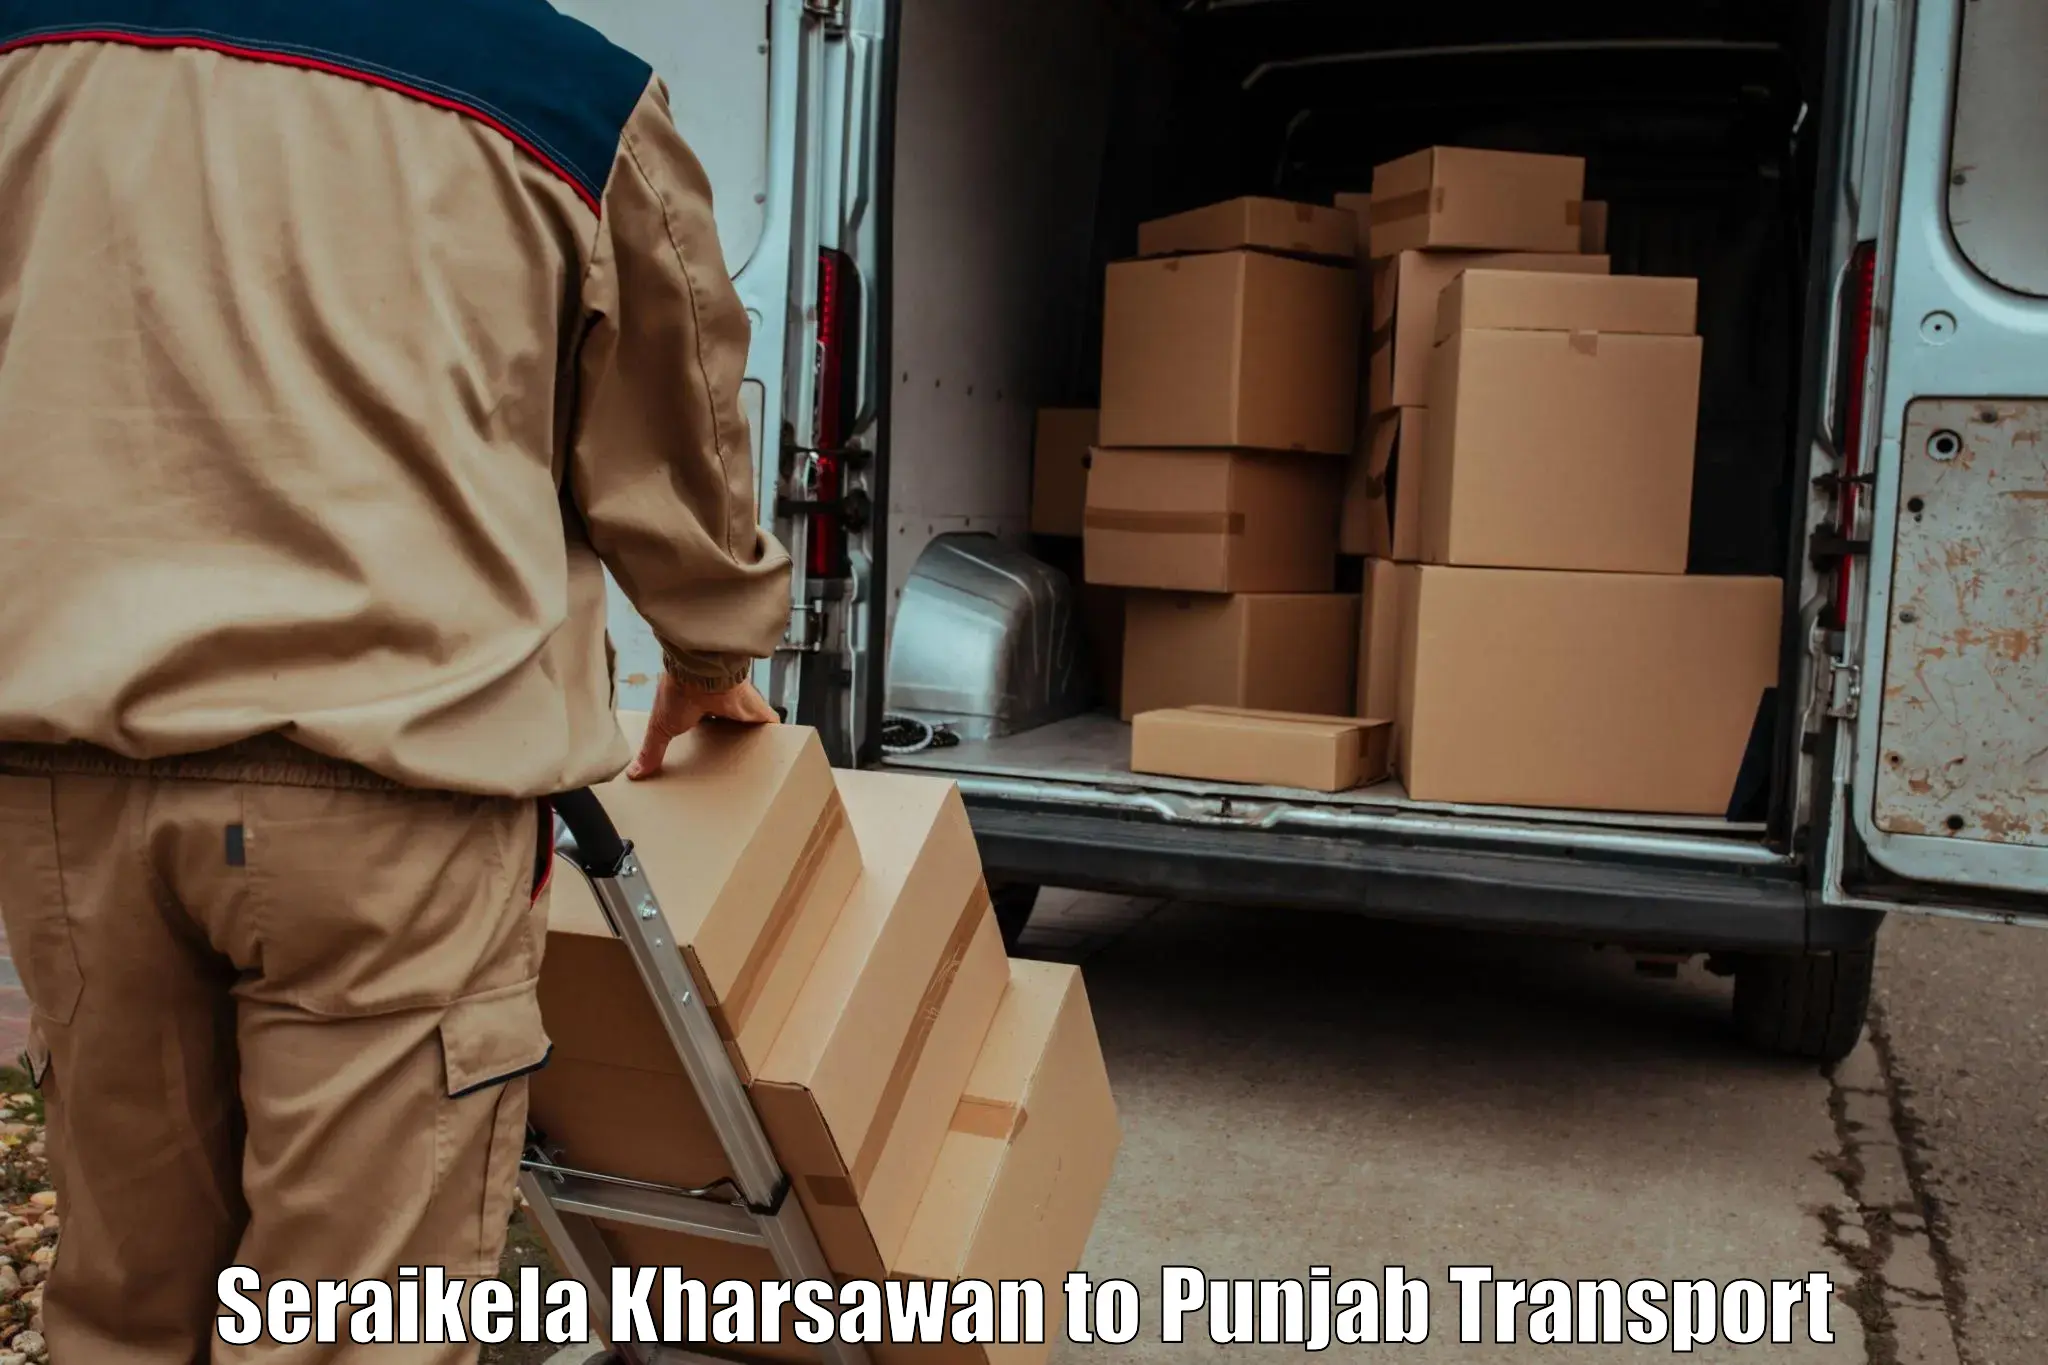 Two wheeler transport services Seraikela Kharsawan to Patti Tarn Tara